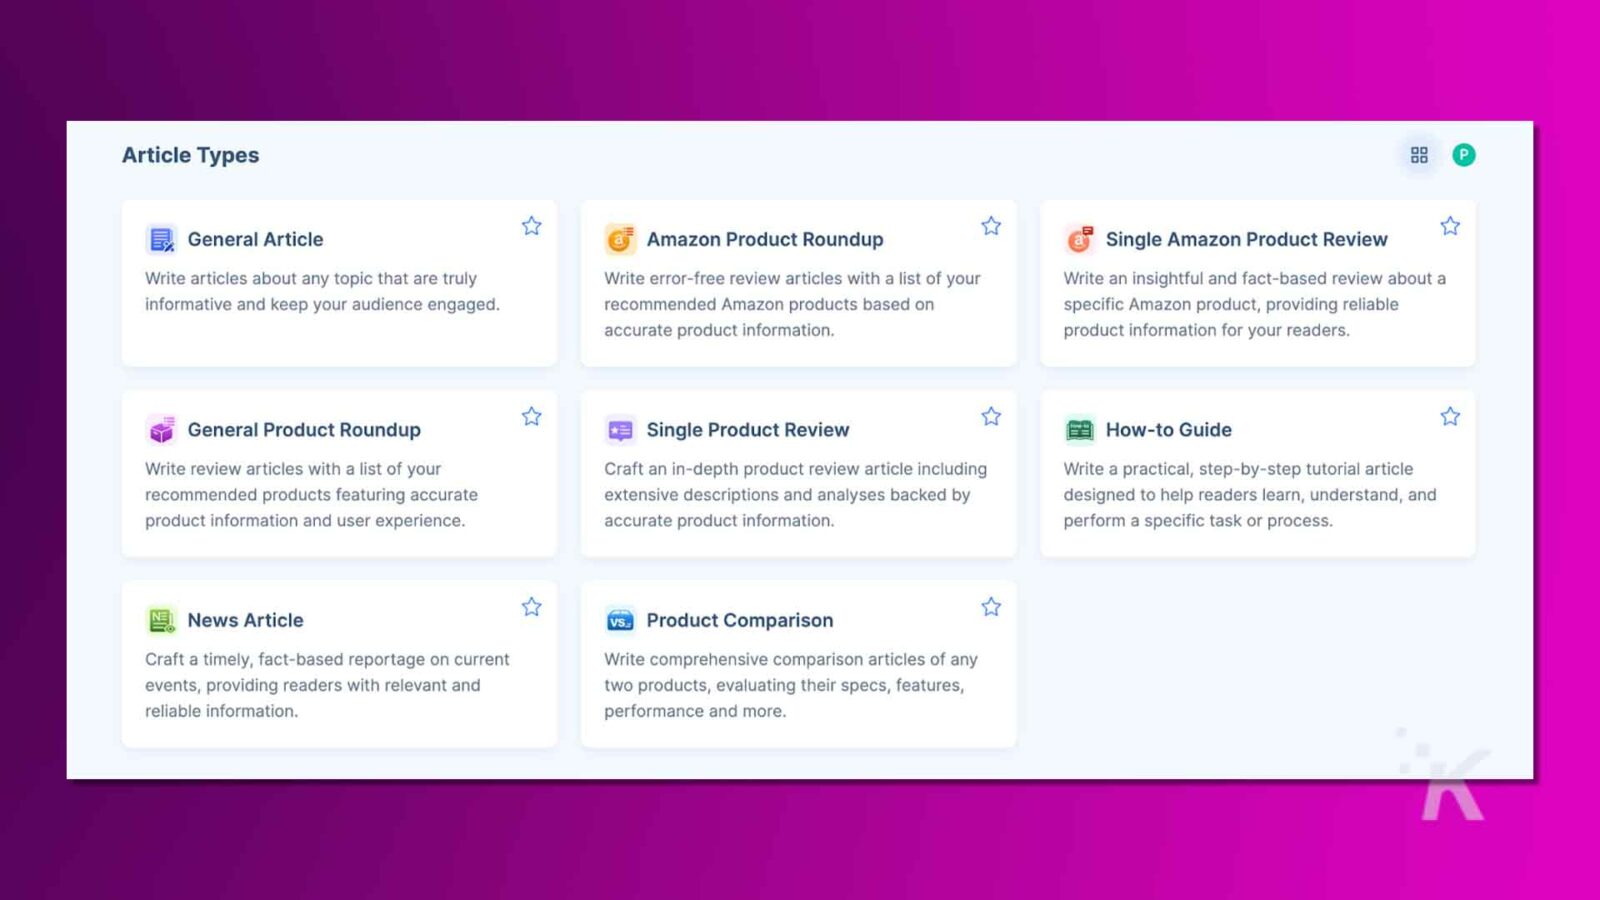 该图像在紫色背景上显示包含八种类型文章内容的图形，包括一般文章、产品评论、新闻文章和操作指南。